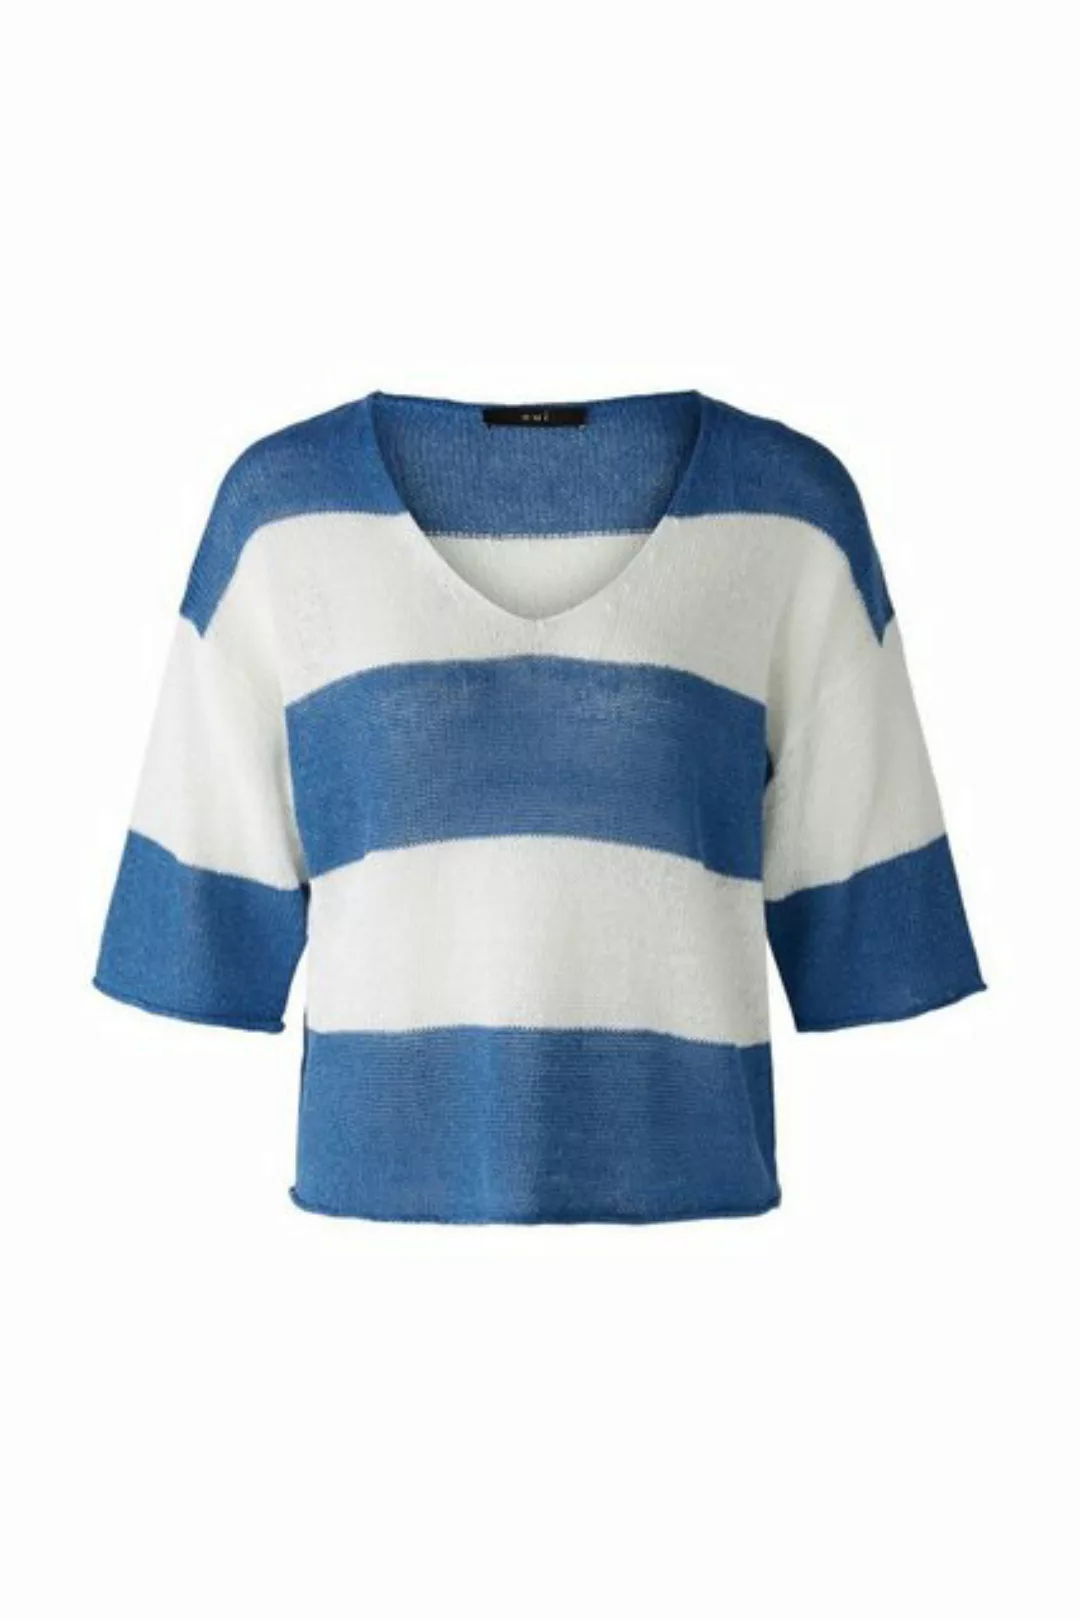 Oui Sweatshirt Pullover, blue white günstig online kaufen